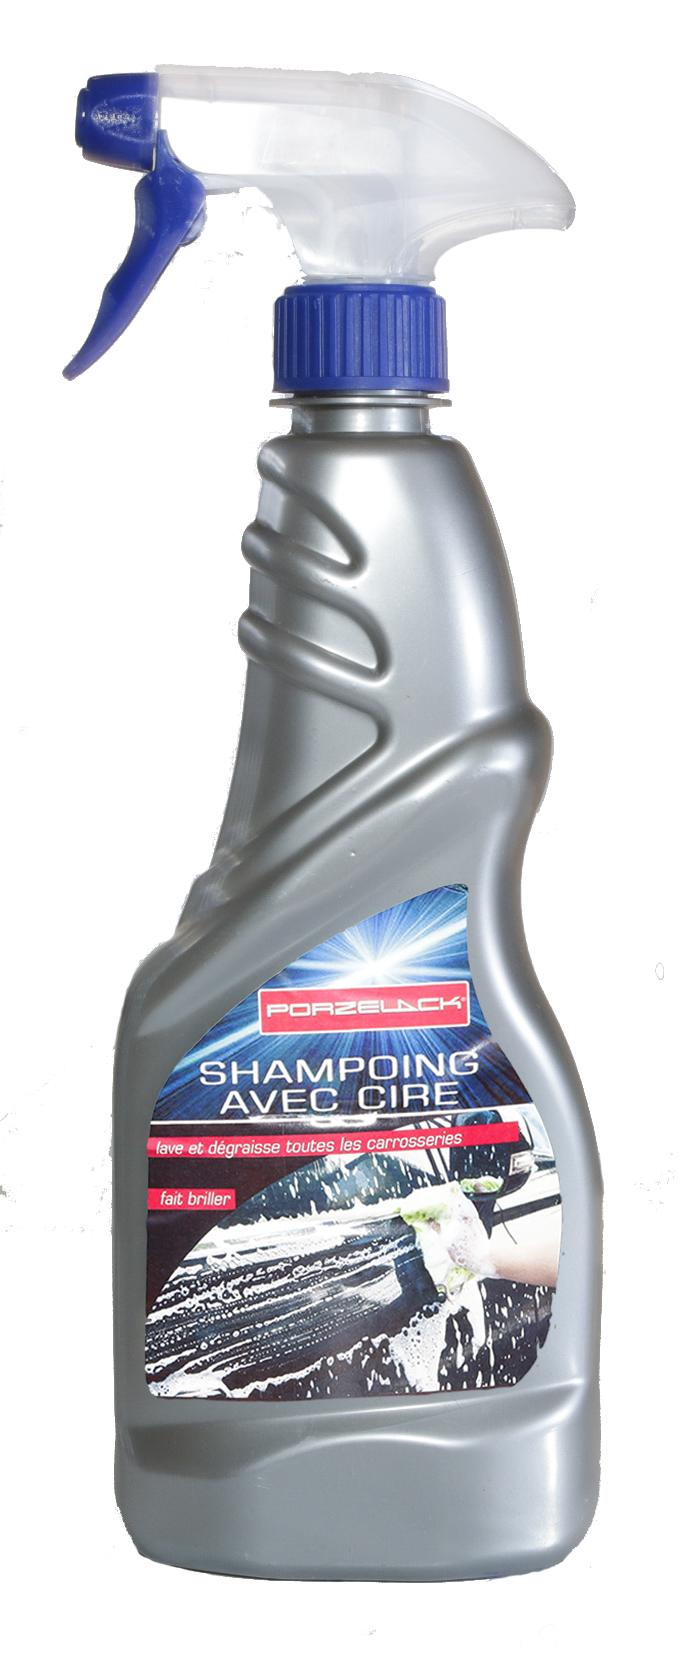 Carrosserie de voiture Aeropak shampooing nettoyant avec de la